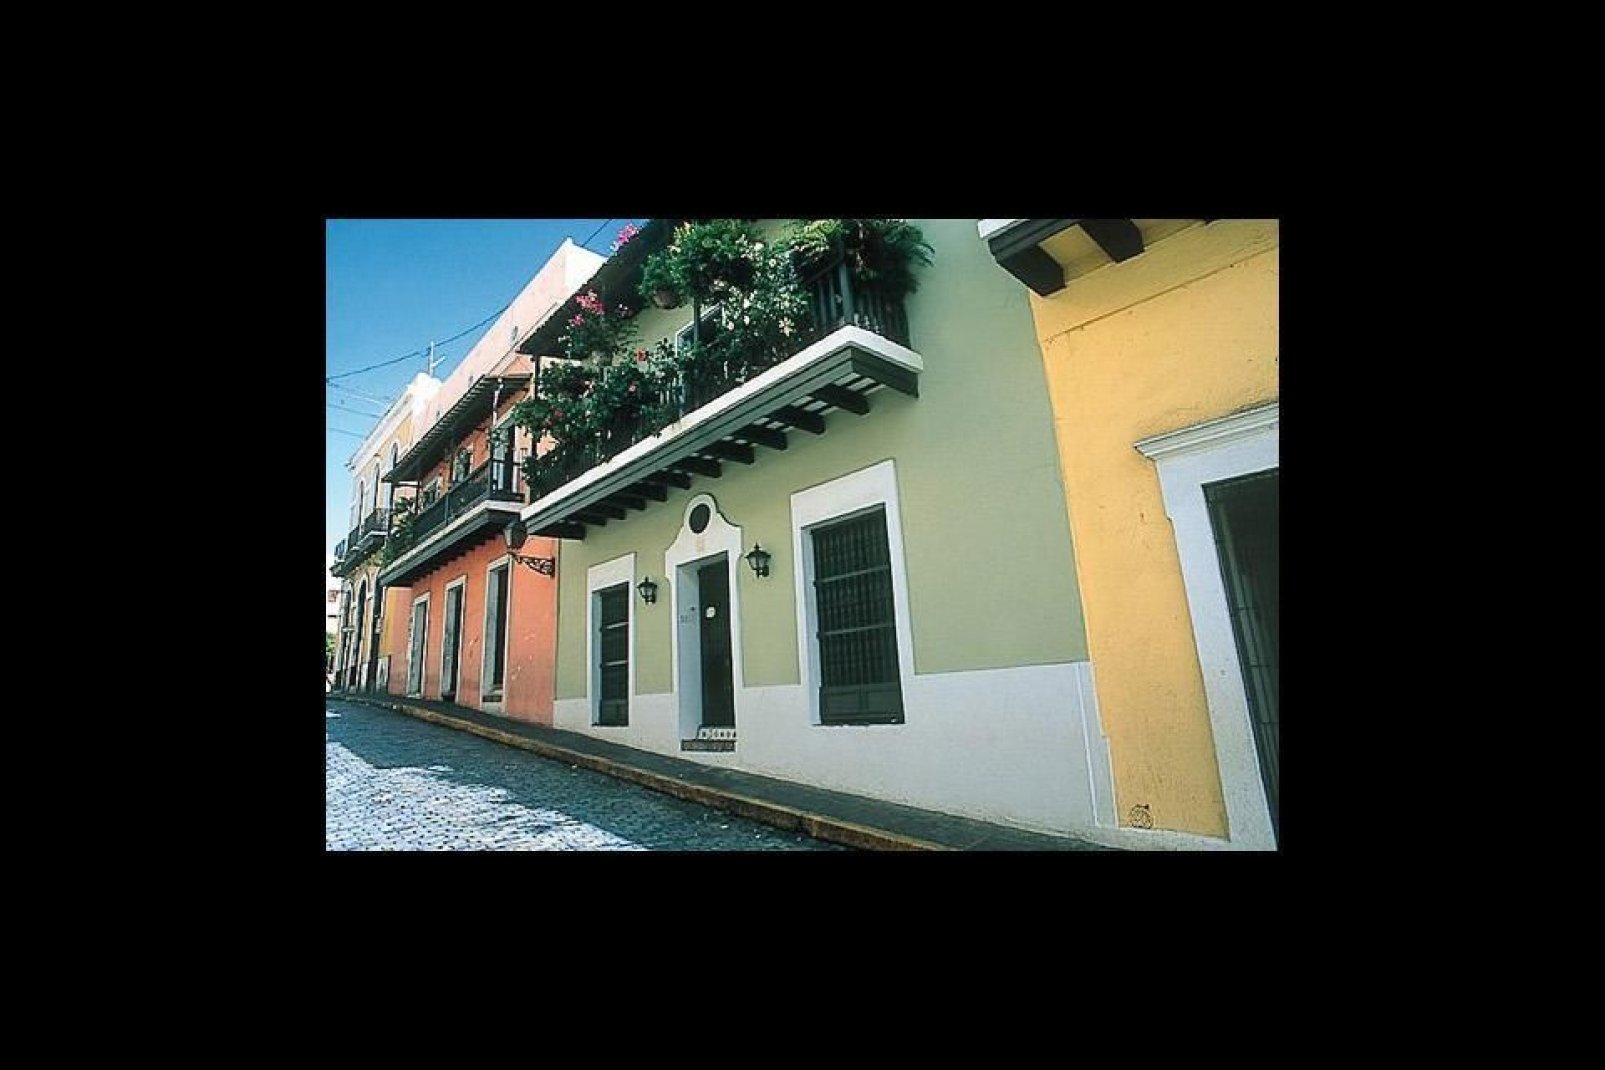 In San Juan gibt es zahlreiche Vorteile auf einen Schlag: Ein festliches Ambiente, erstklassige Gastronomie, denkmalgeschützte Gebäude...